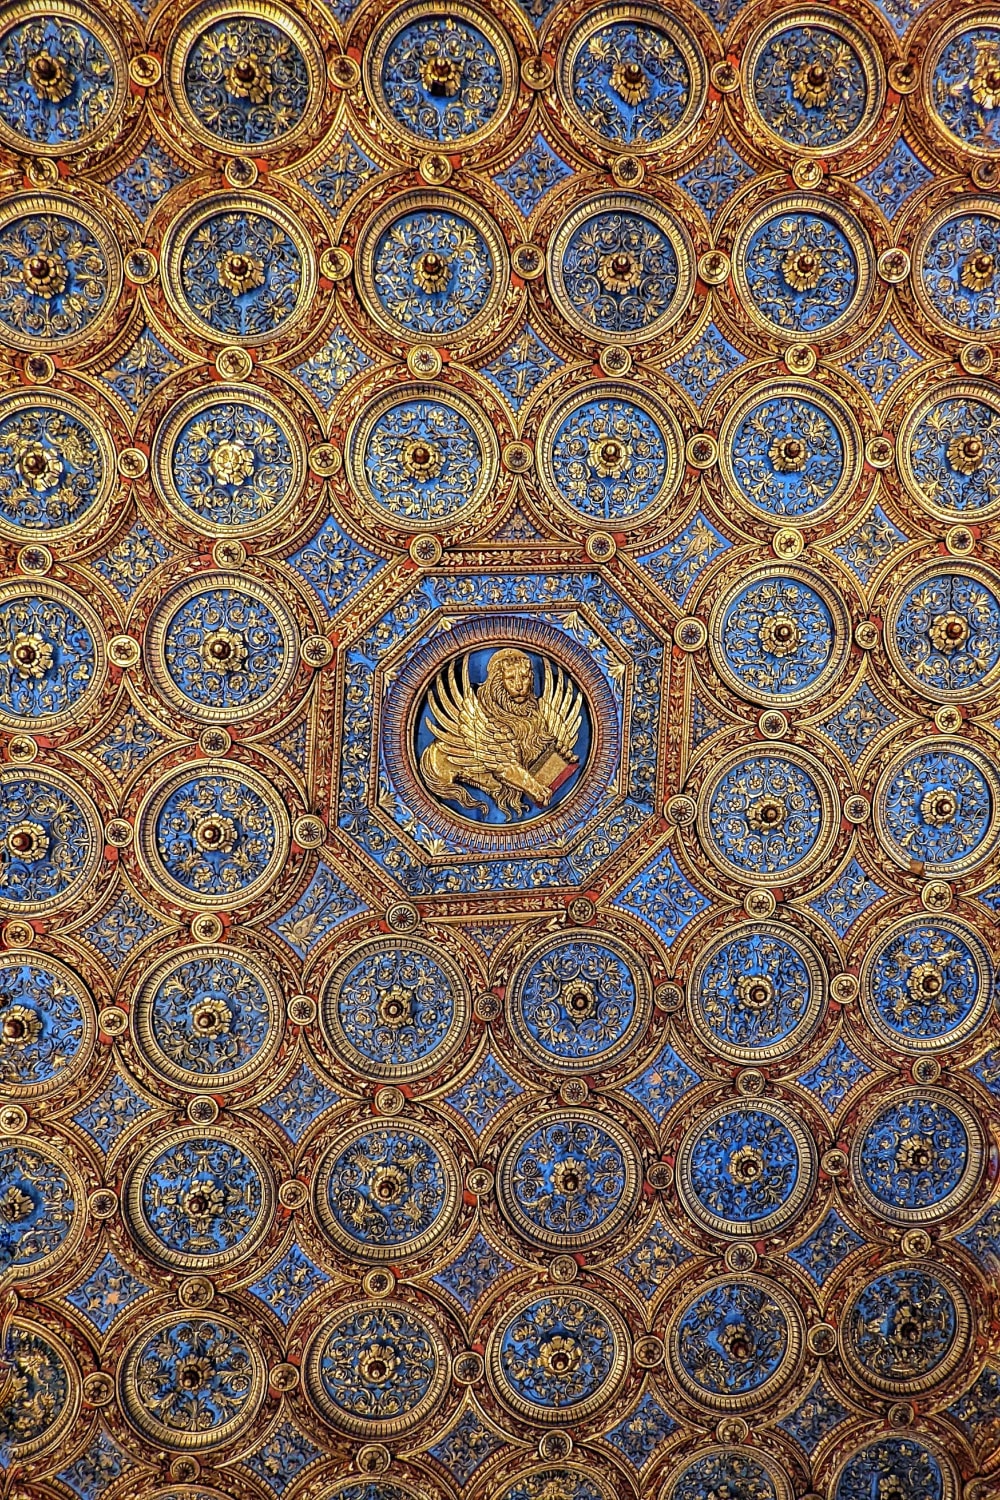 Ceiling of the Sala dell' Albergo by Pietro and Biagio di Faenza, Scuola Grande di San Marco, Venice, Italy